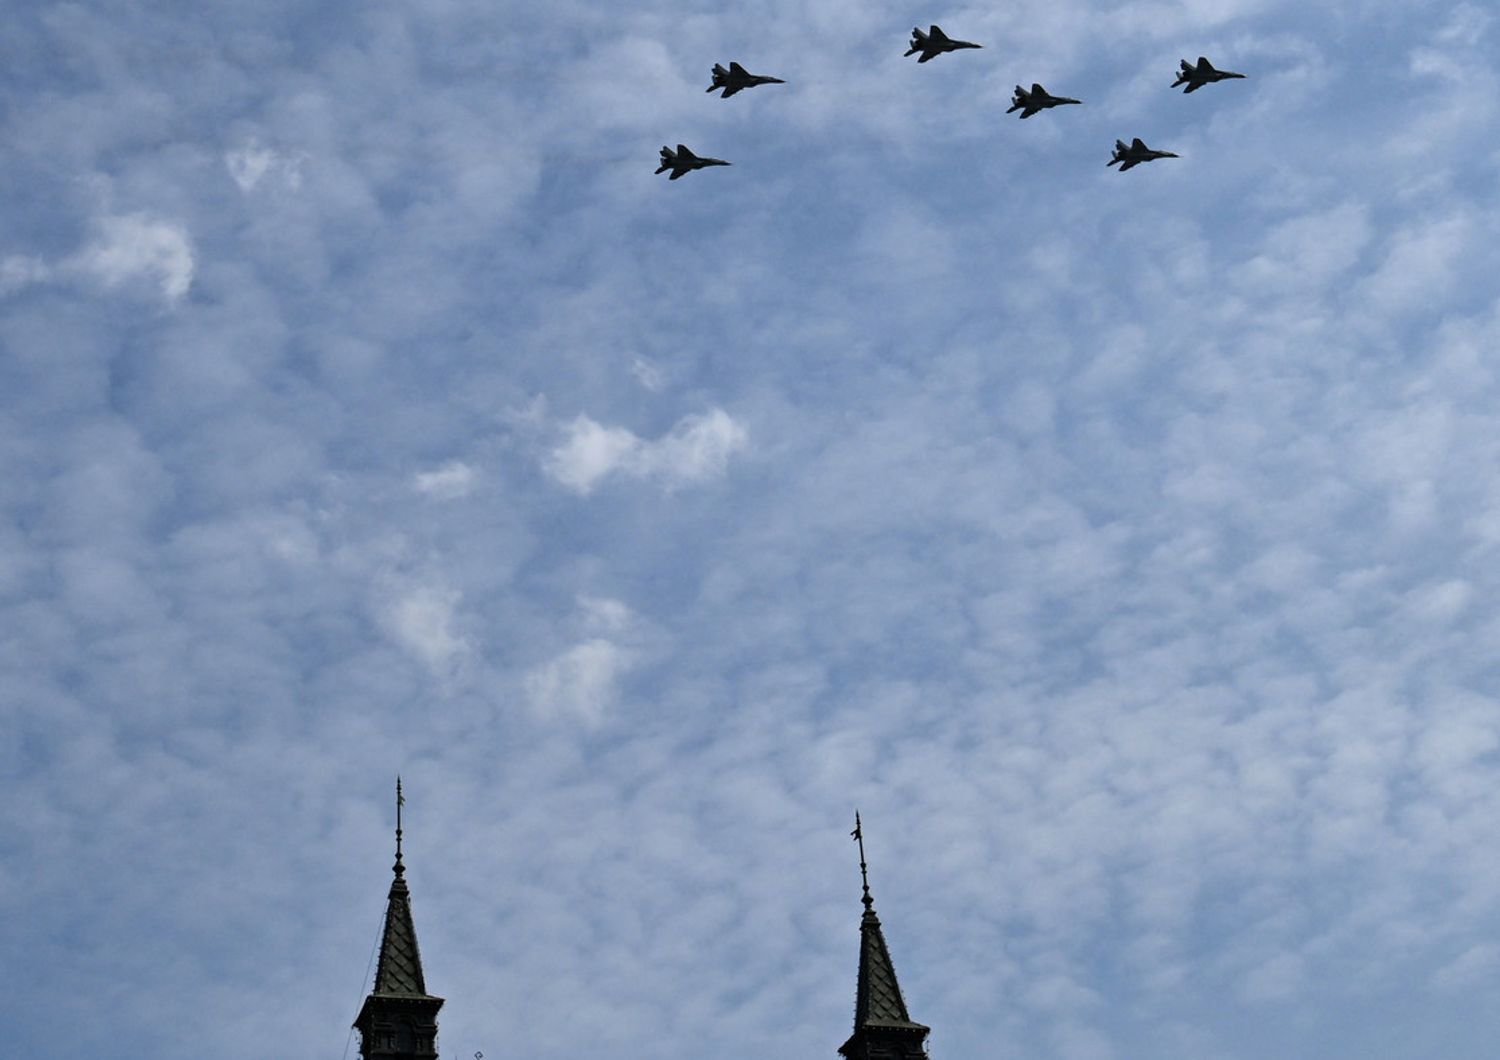 Otto caccia MiG-29SM formano sul cielo di Mosca la 'Z' dell'invasione in Ucraina